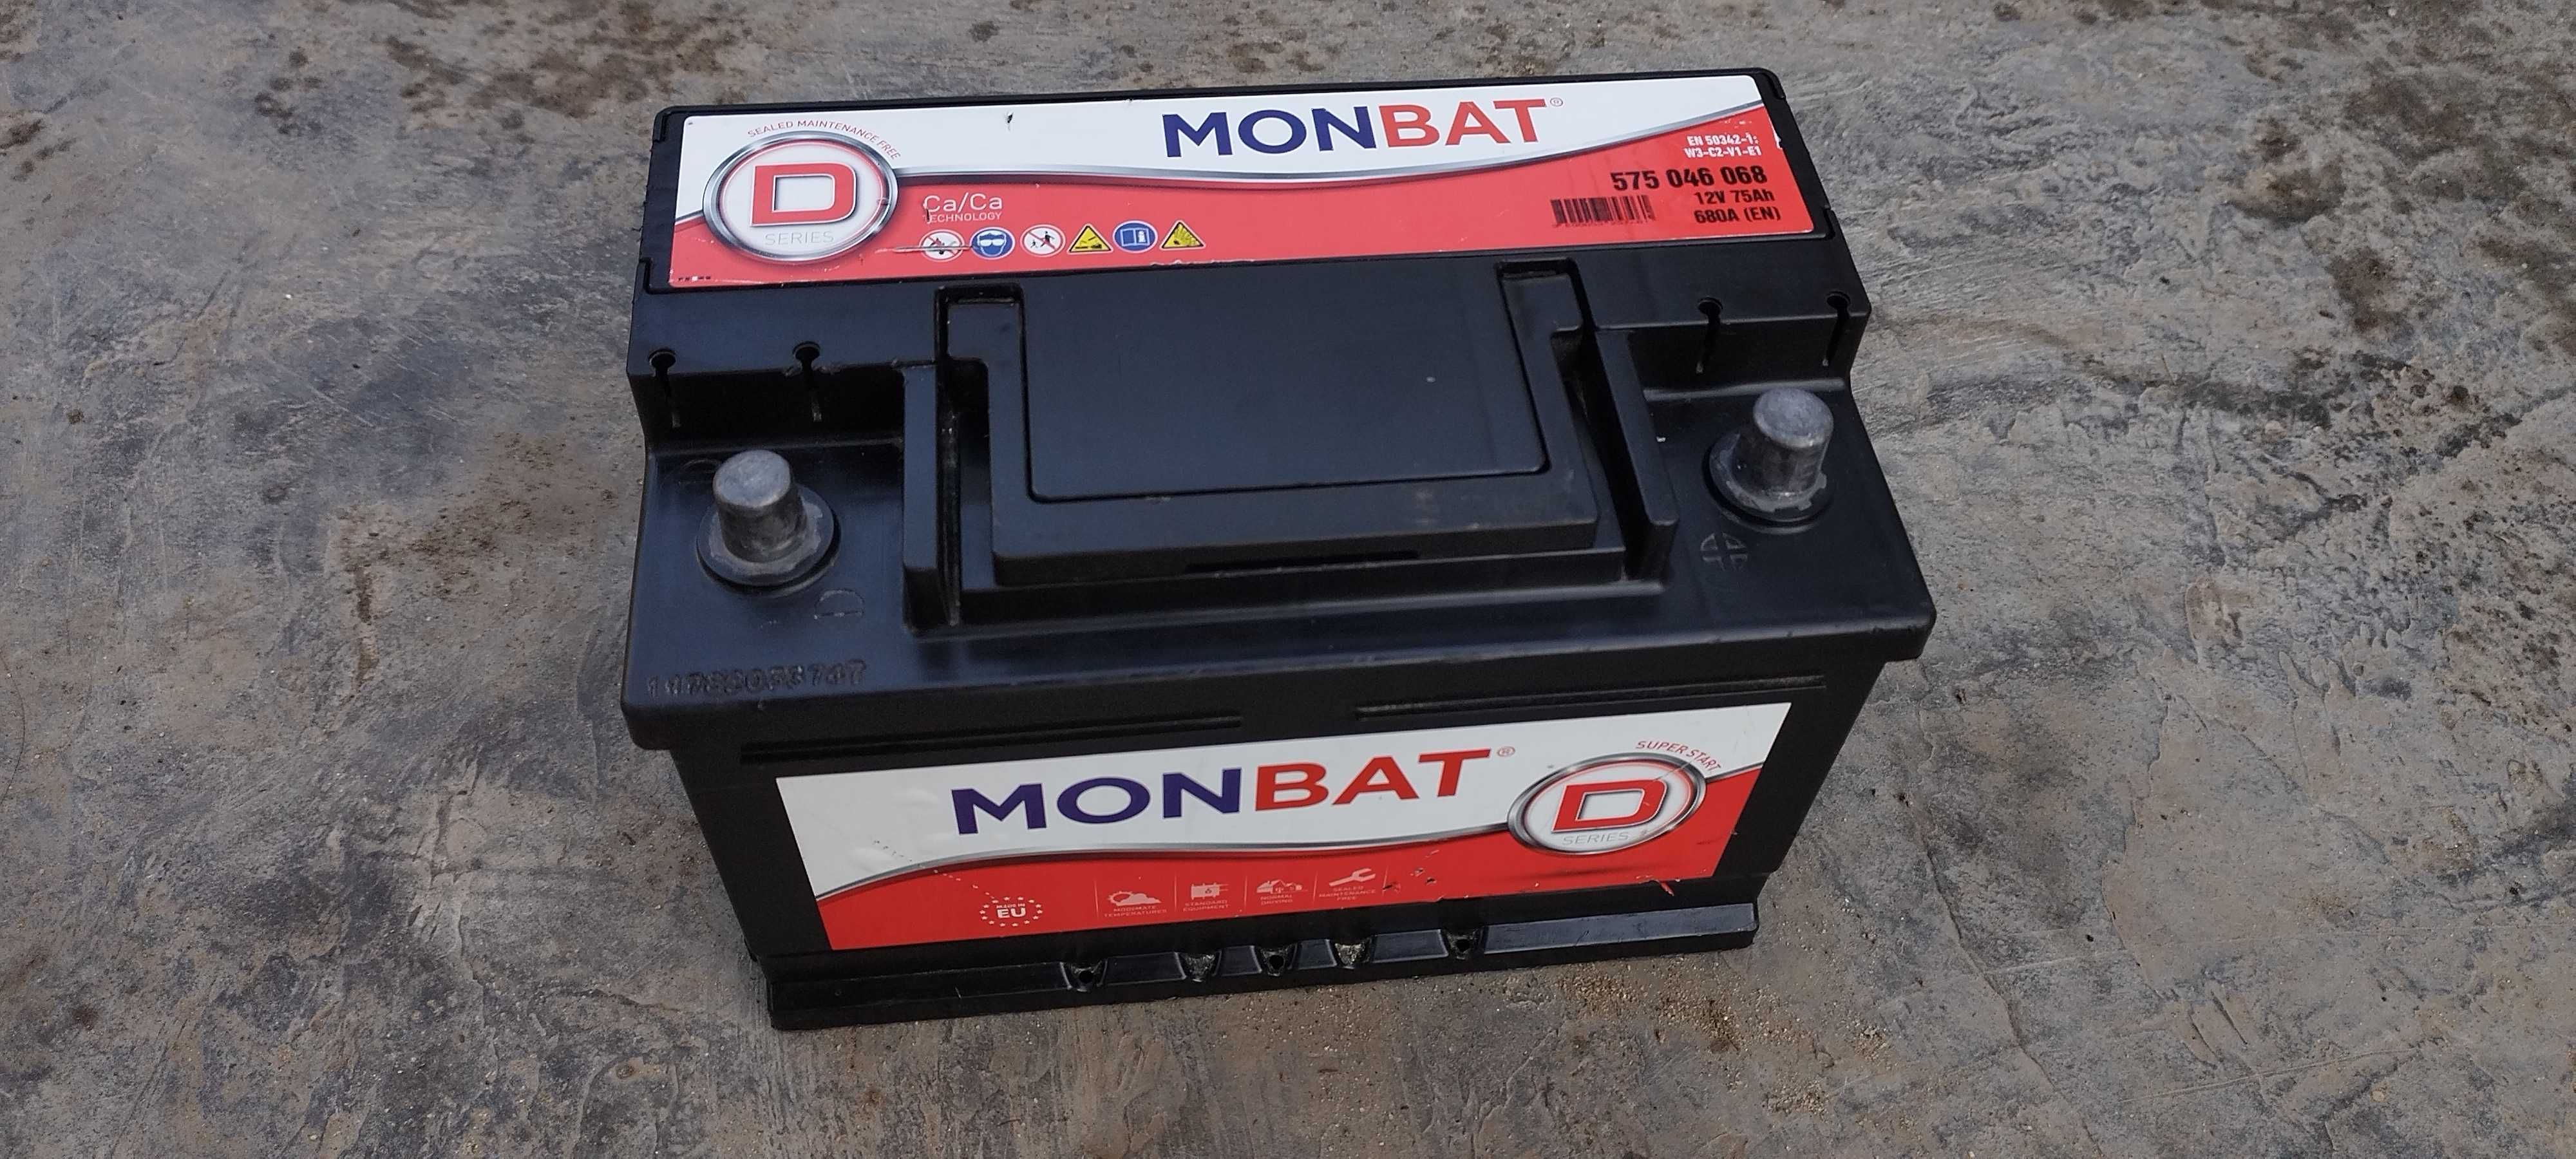 Baterie auto Monbat Dynamic, 75 Ah, 680 A 